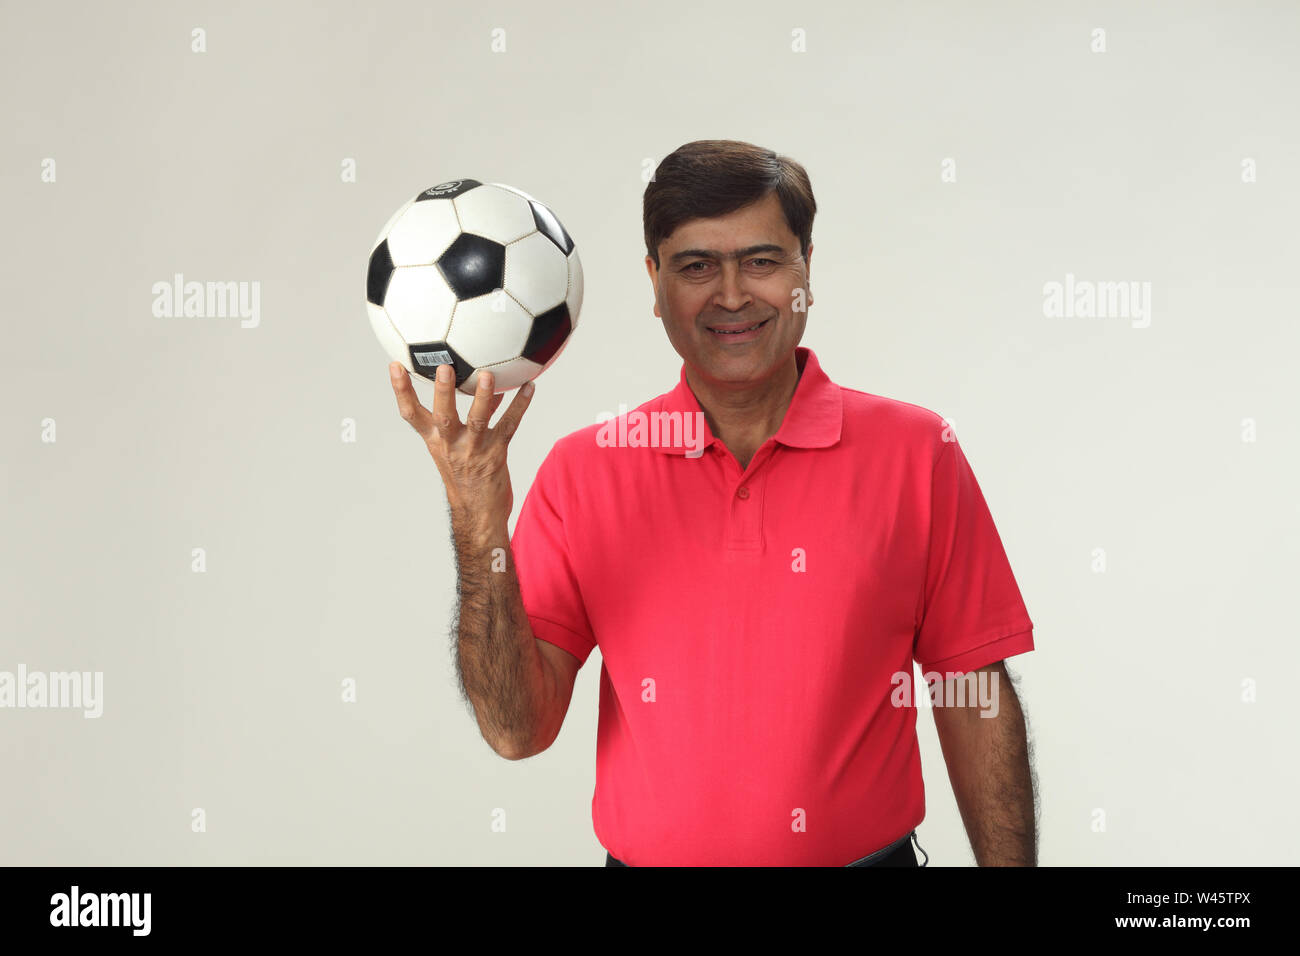 Porträt eines Mannes hält einen Fußball und lächelnd Stockfoto